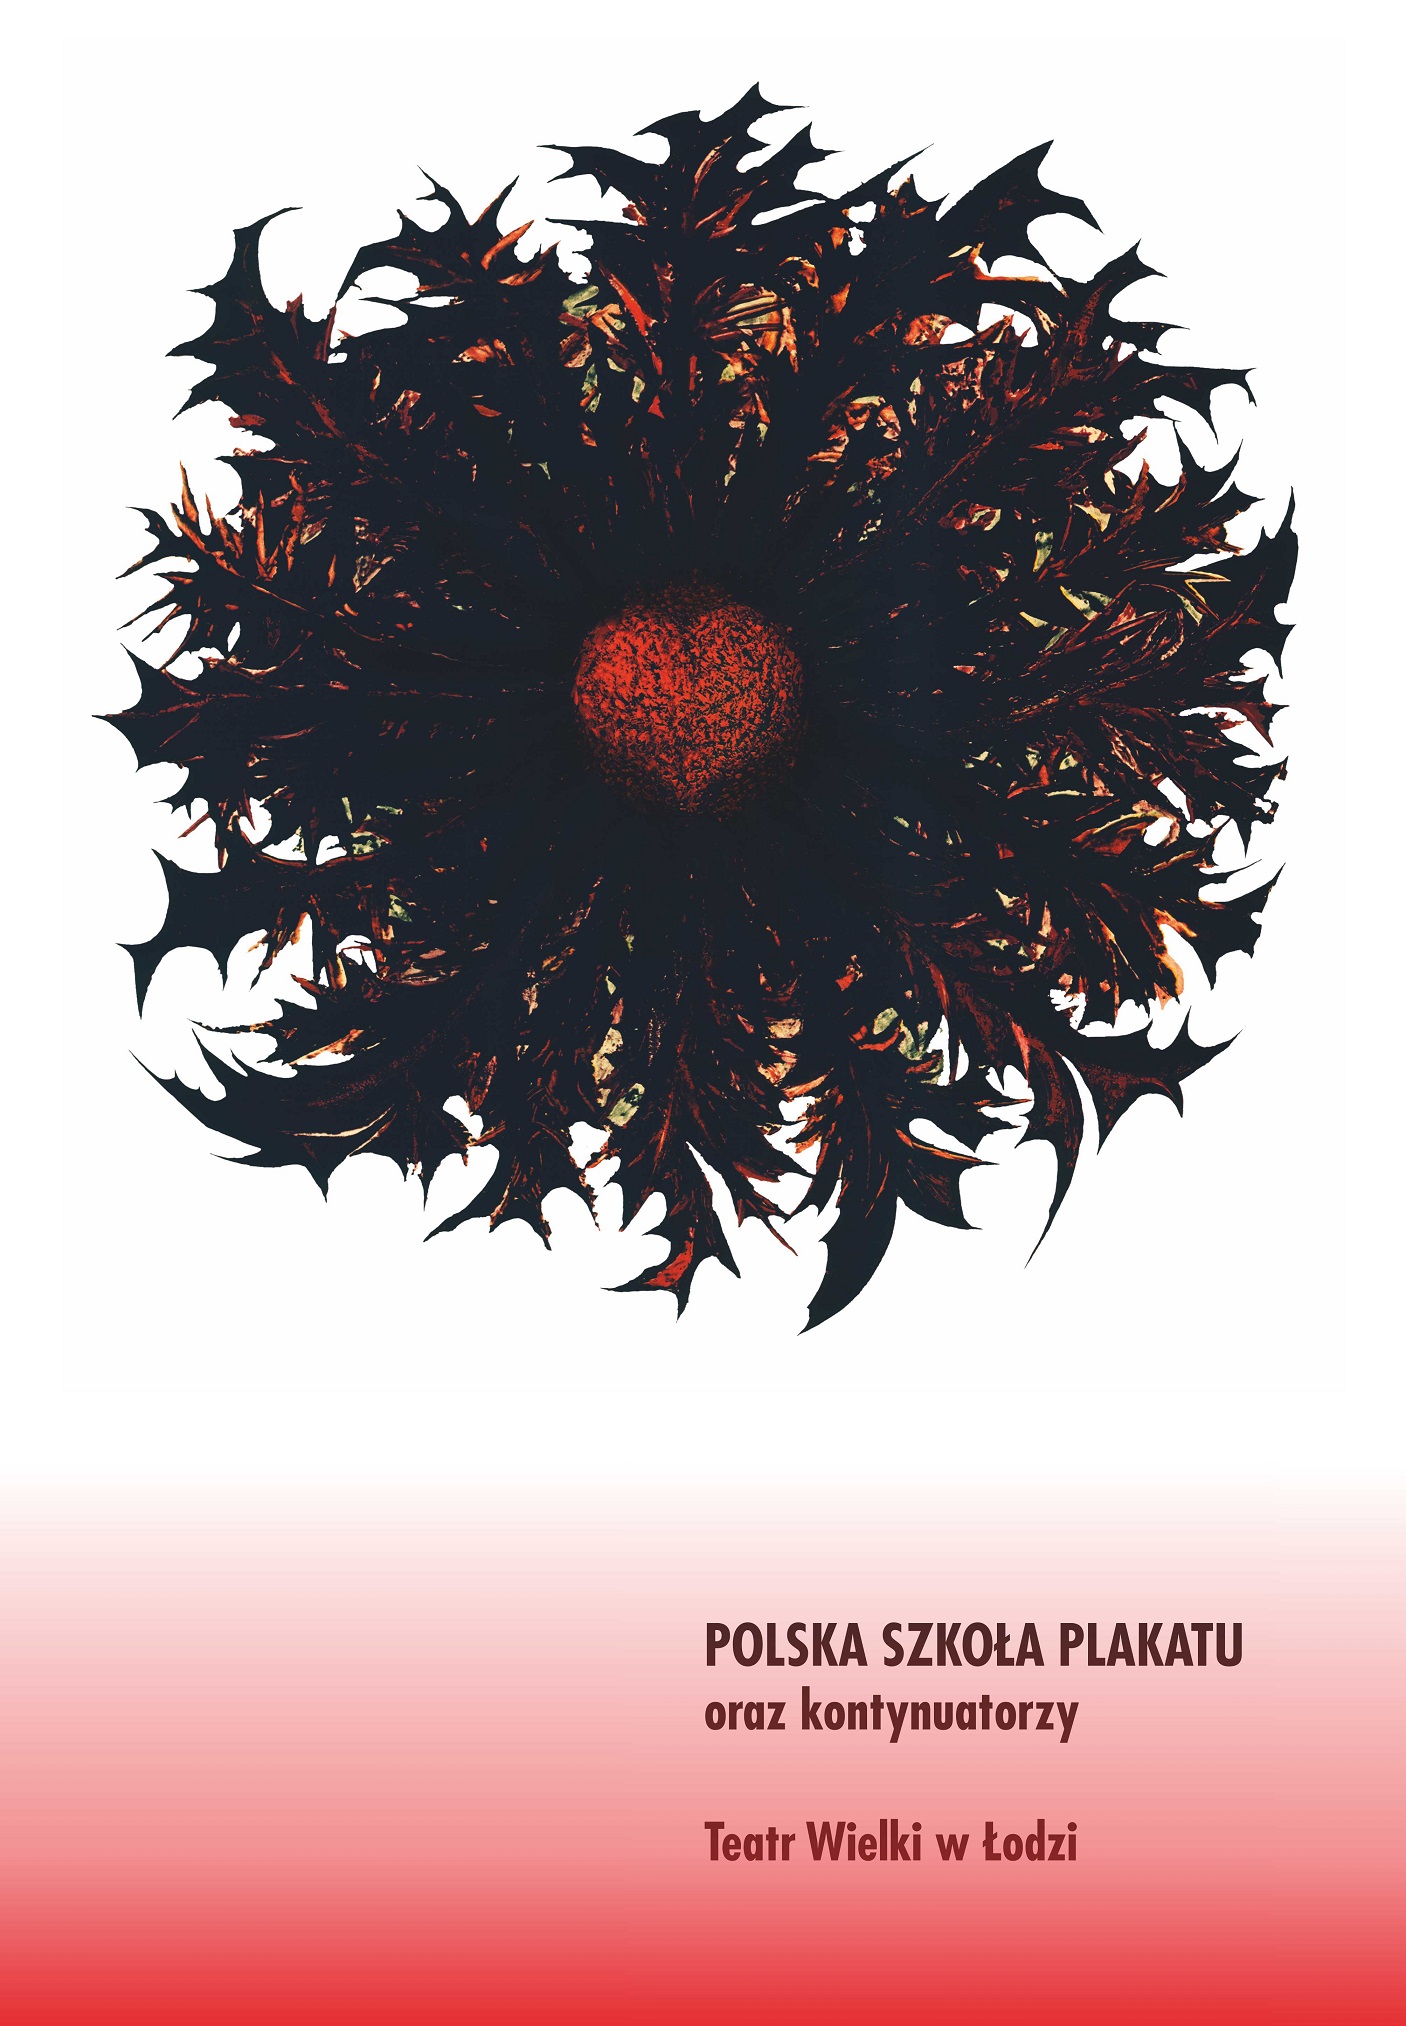 „Polska szkoła plakatu oraz kontynuatorzy” (źródło: materiały prasowe organizatora)